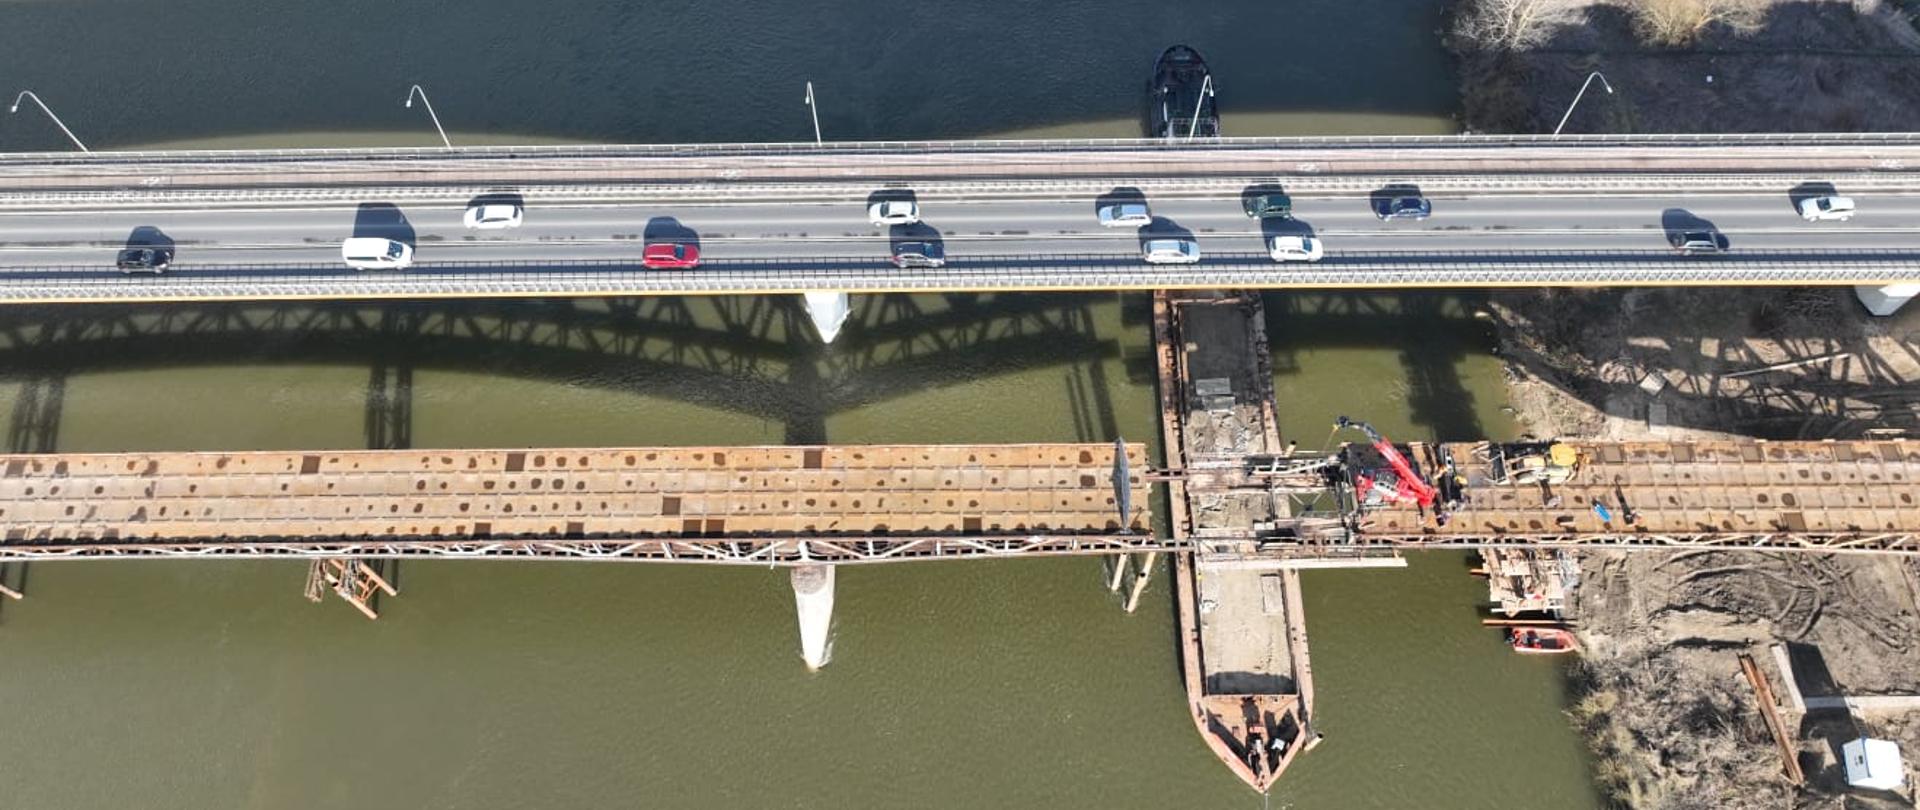 DK77 mosty w Sandomierzu - dwa mosty sfotografowane z drona. Jednym odbywa się ruch w obu kierunkach - widoczne samochody. Drugi równoległy jest rozbierany. W miejscu rozcięcia konstrukcji stalowej pod mostem zacumowana barka. Na konstrukcji dźwig i ładowarka.